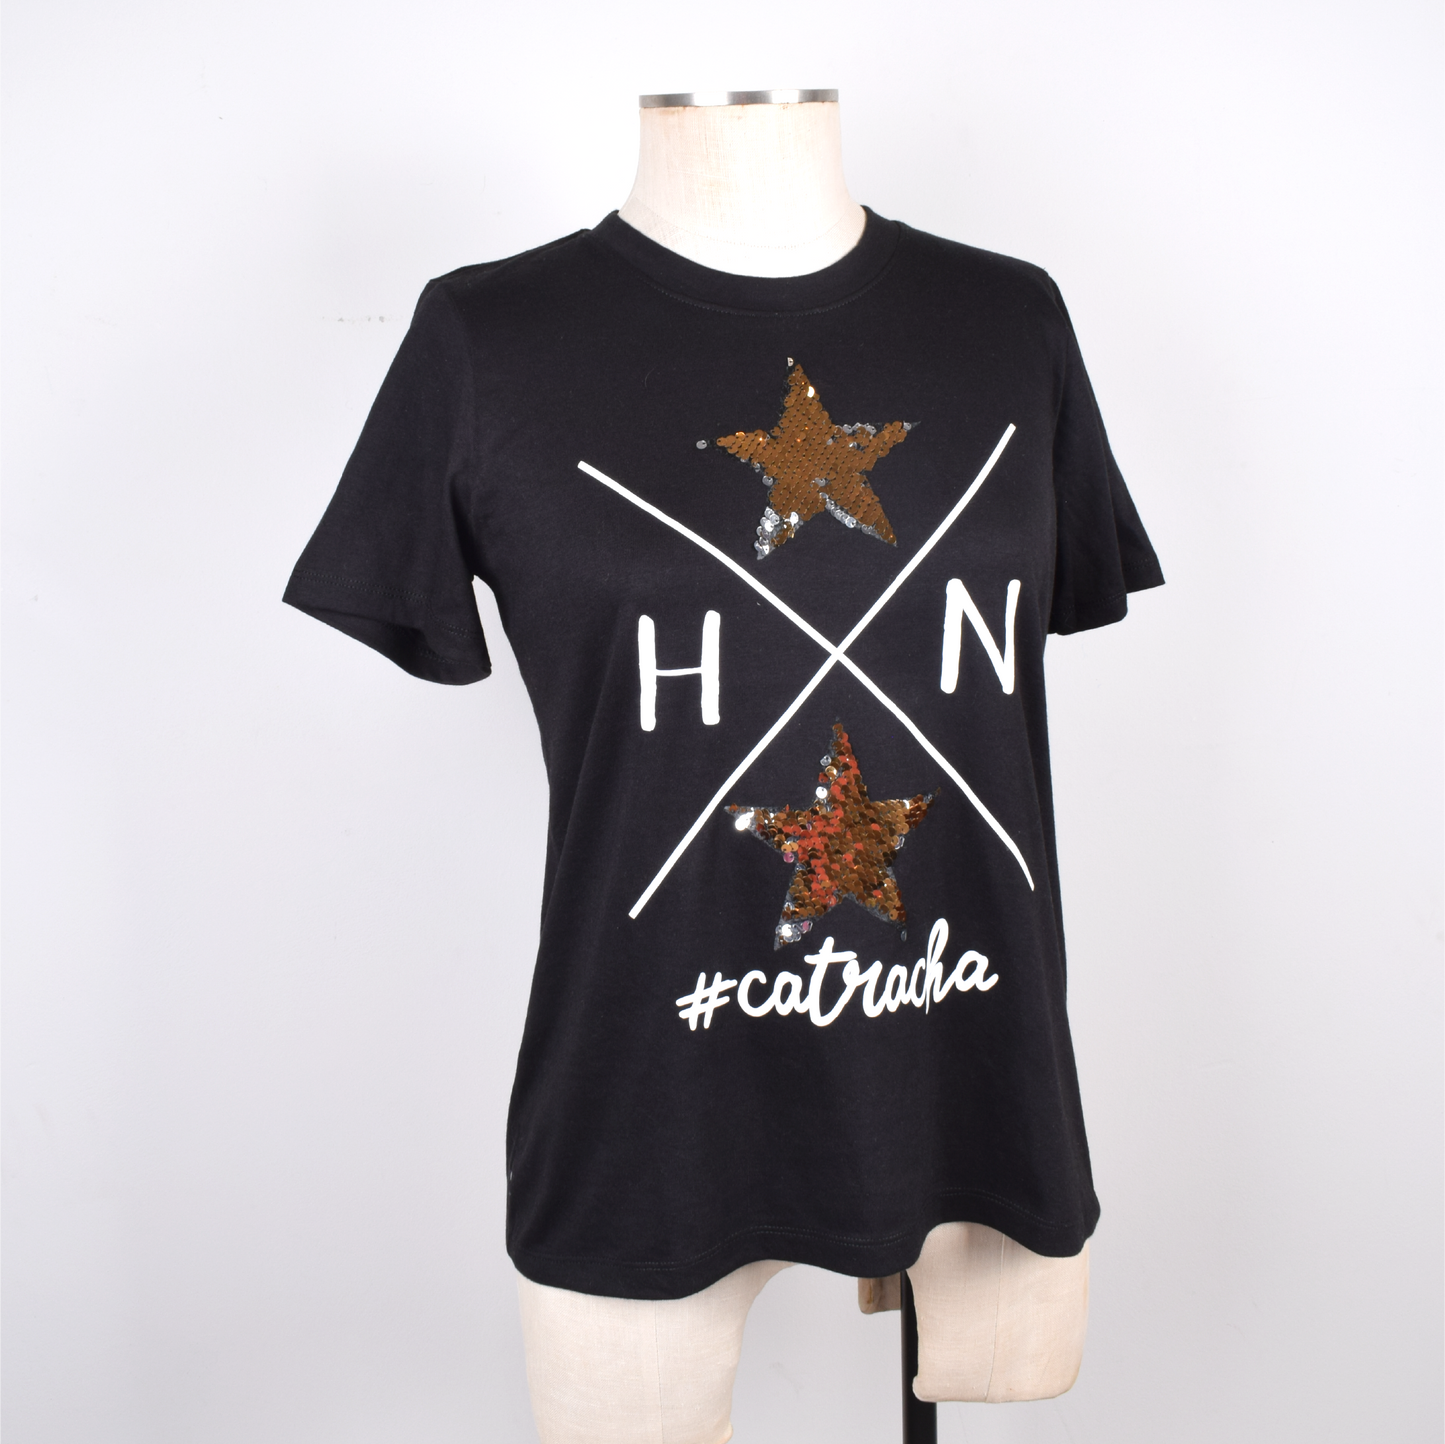 Catracha Estrellas Lentejuelas Camiseta Mujer